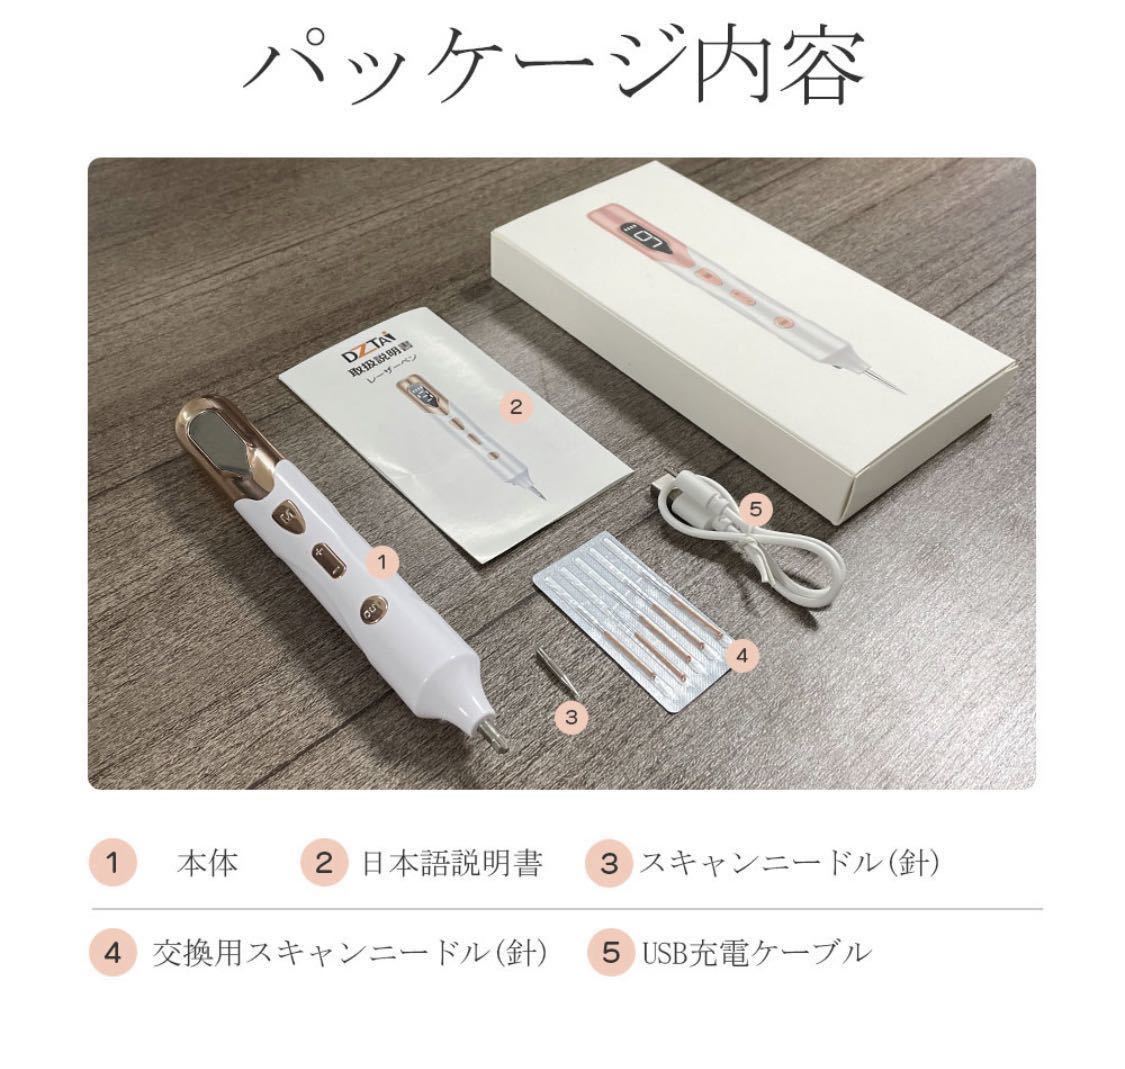 【楽天1位】レーザーペン 美顔レーザーペン エステ ケア 美顔器 USB充電式 家庭用 9段階 調整可能 日本語説明書付き プレゼント 人気_画像5